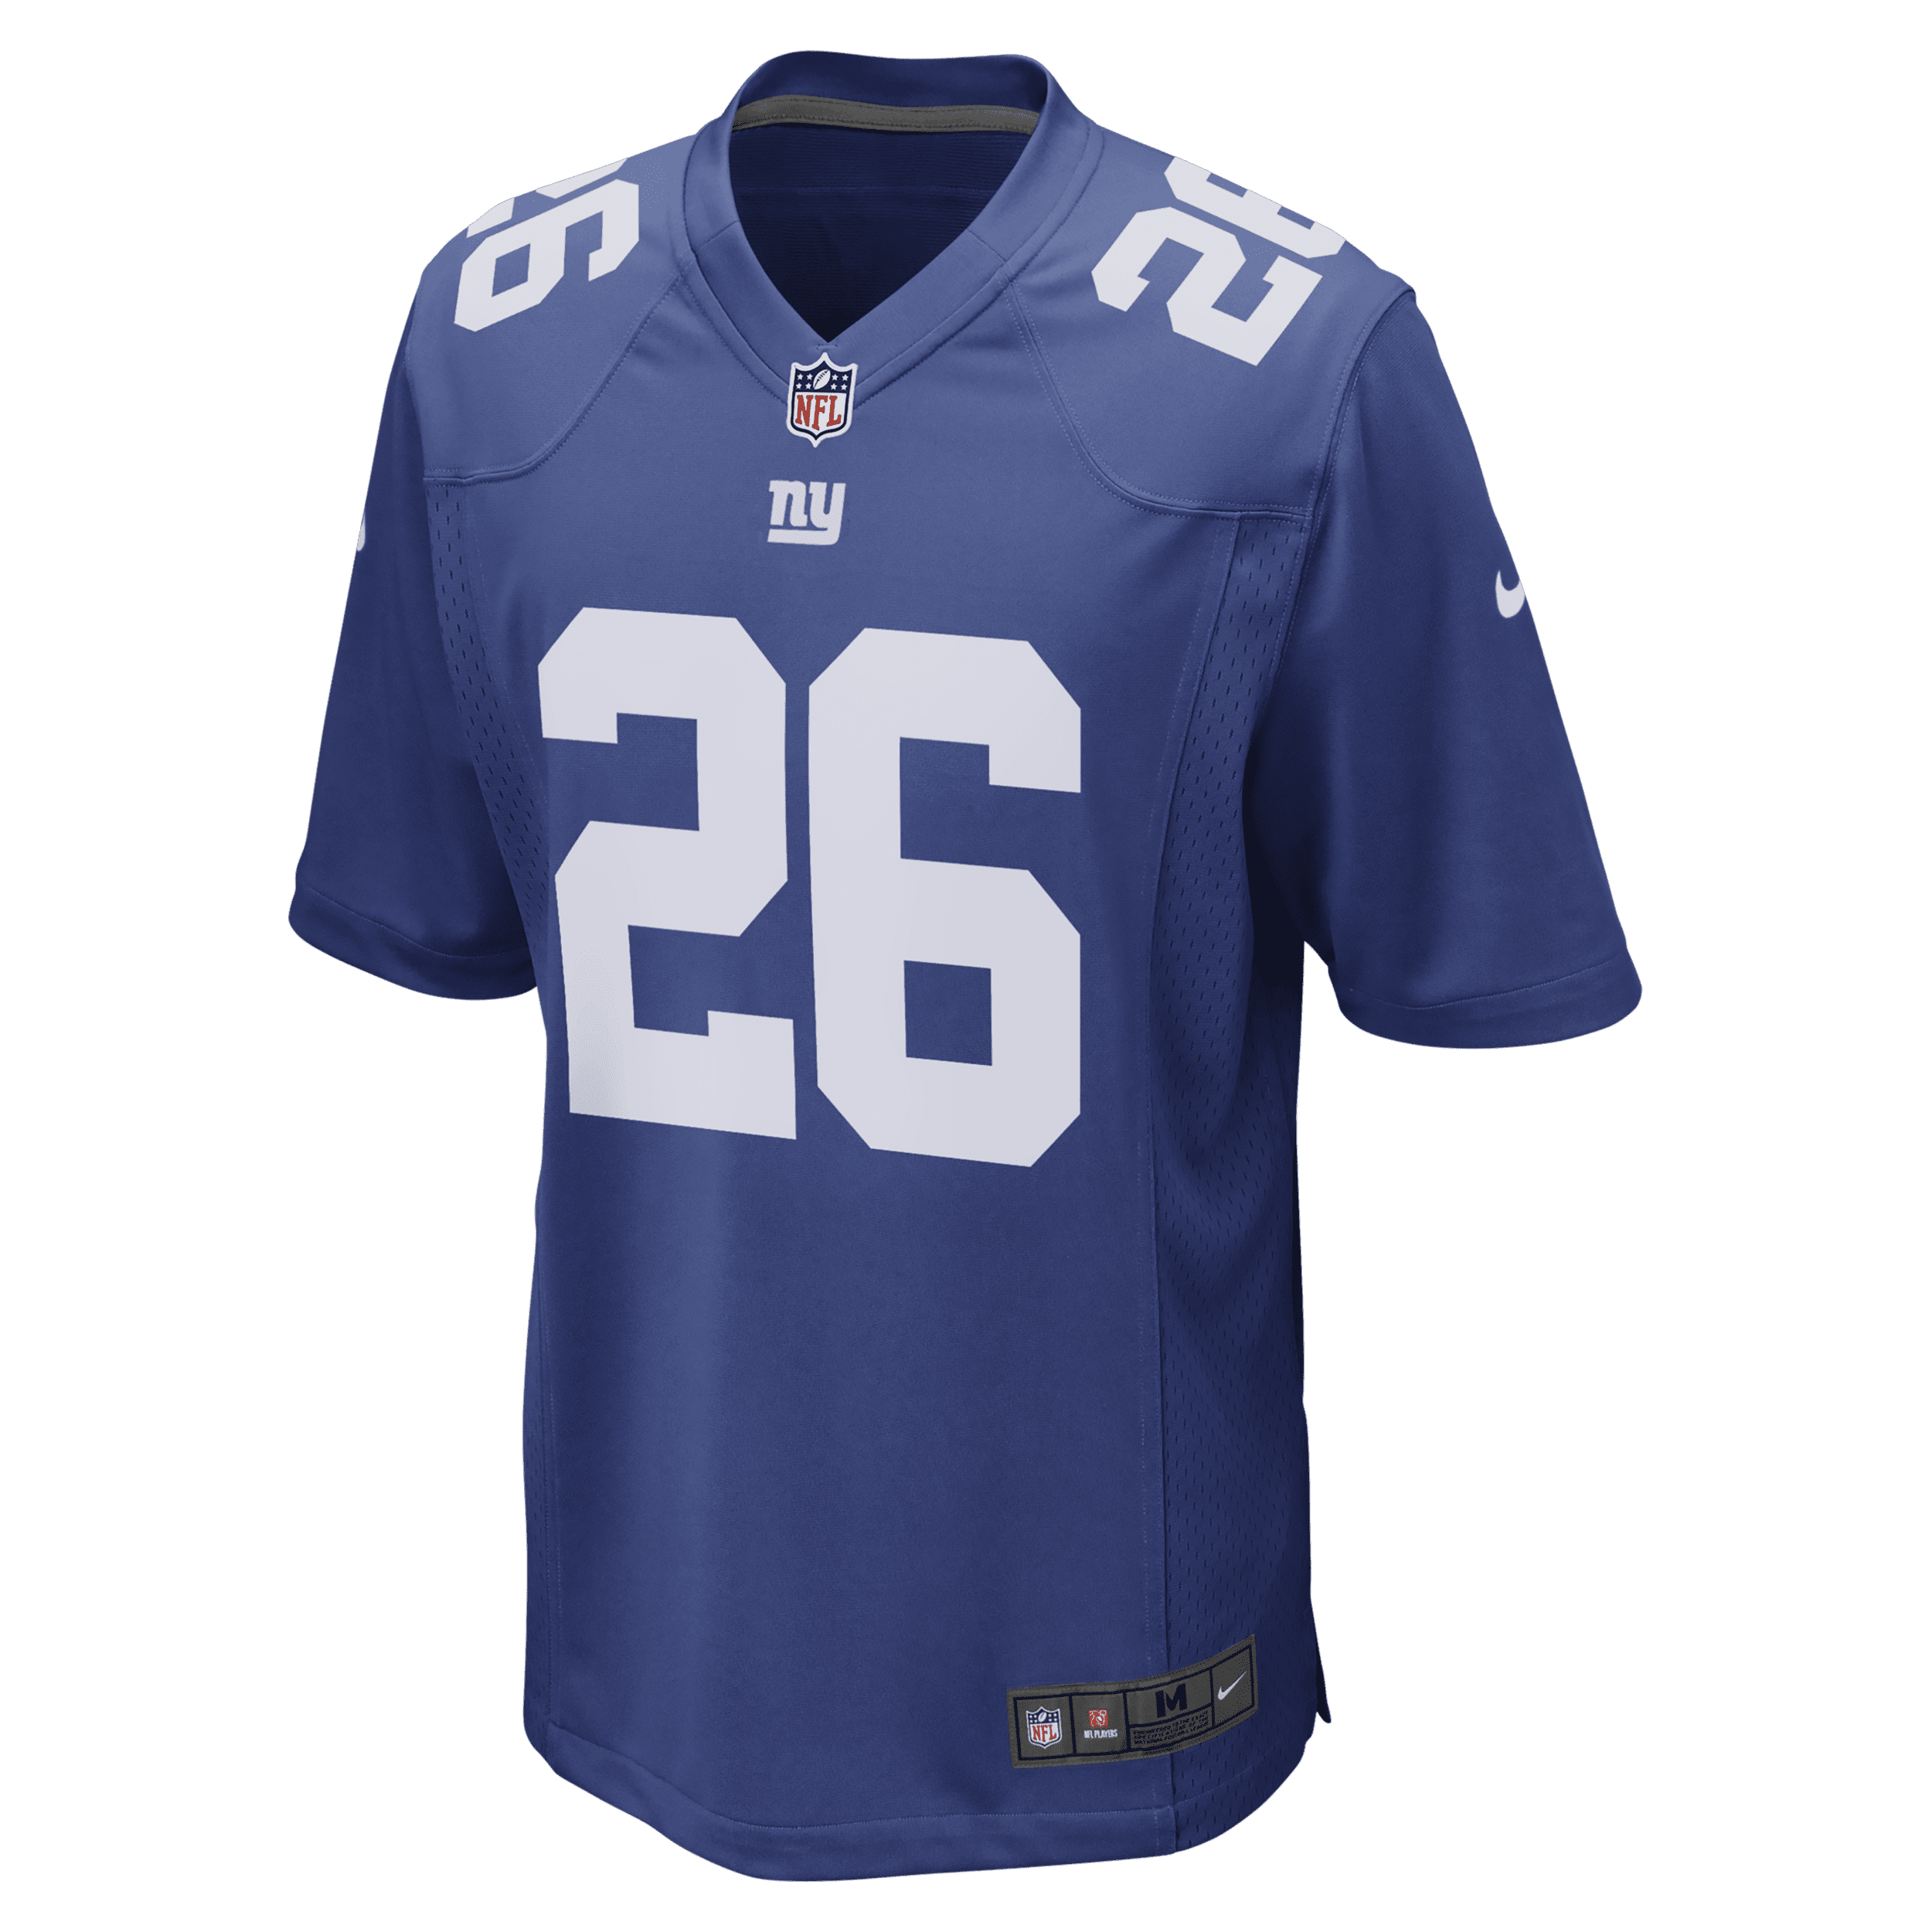 Nike NFL New York Giants (Saquon Barkley) American-football-wedstrijdjersey voor heren - Blauw